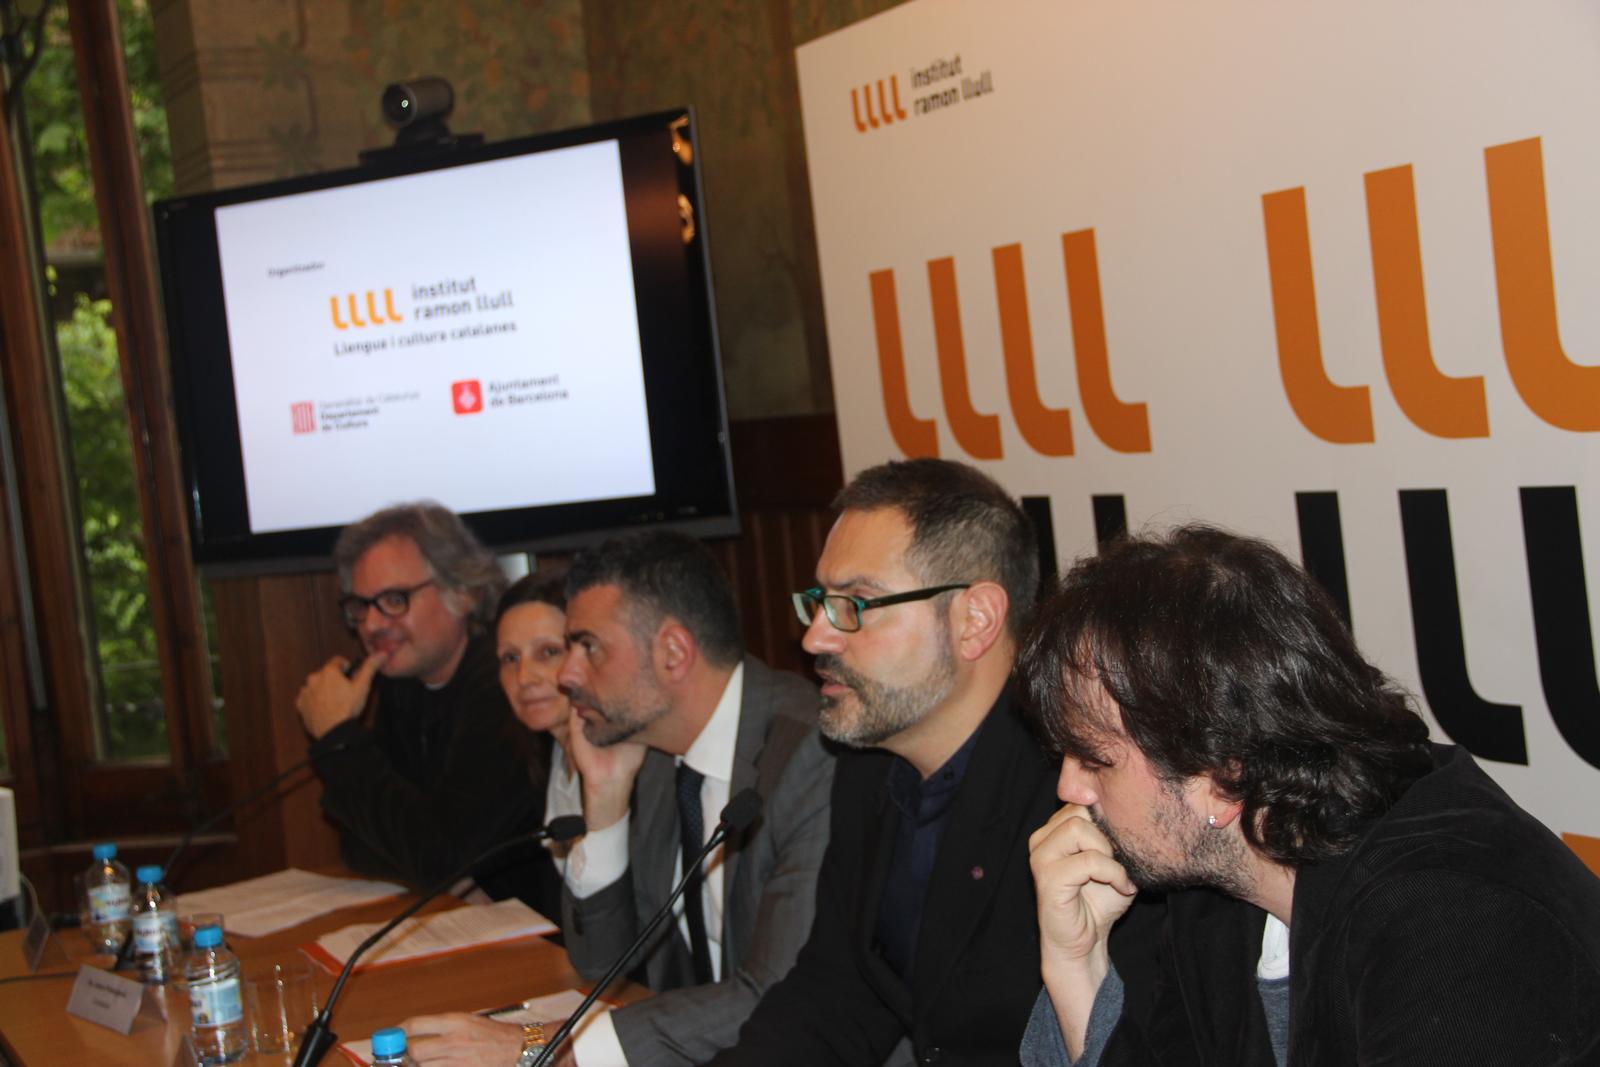 El conseller de cultura, Santi Vila, el director de l'IRL, Manuel Forcano i els comissaris Jaume Prat, Jelena Prokoplevic i Isaki Lacuesta